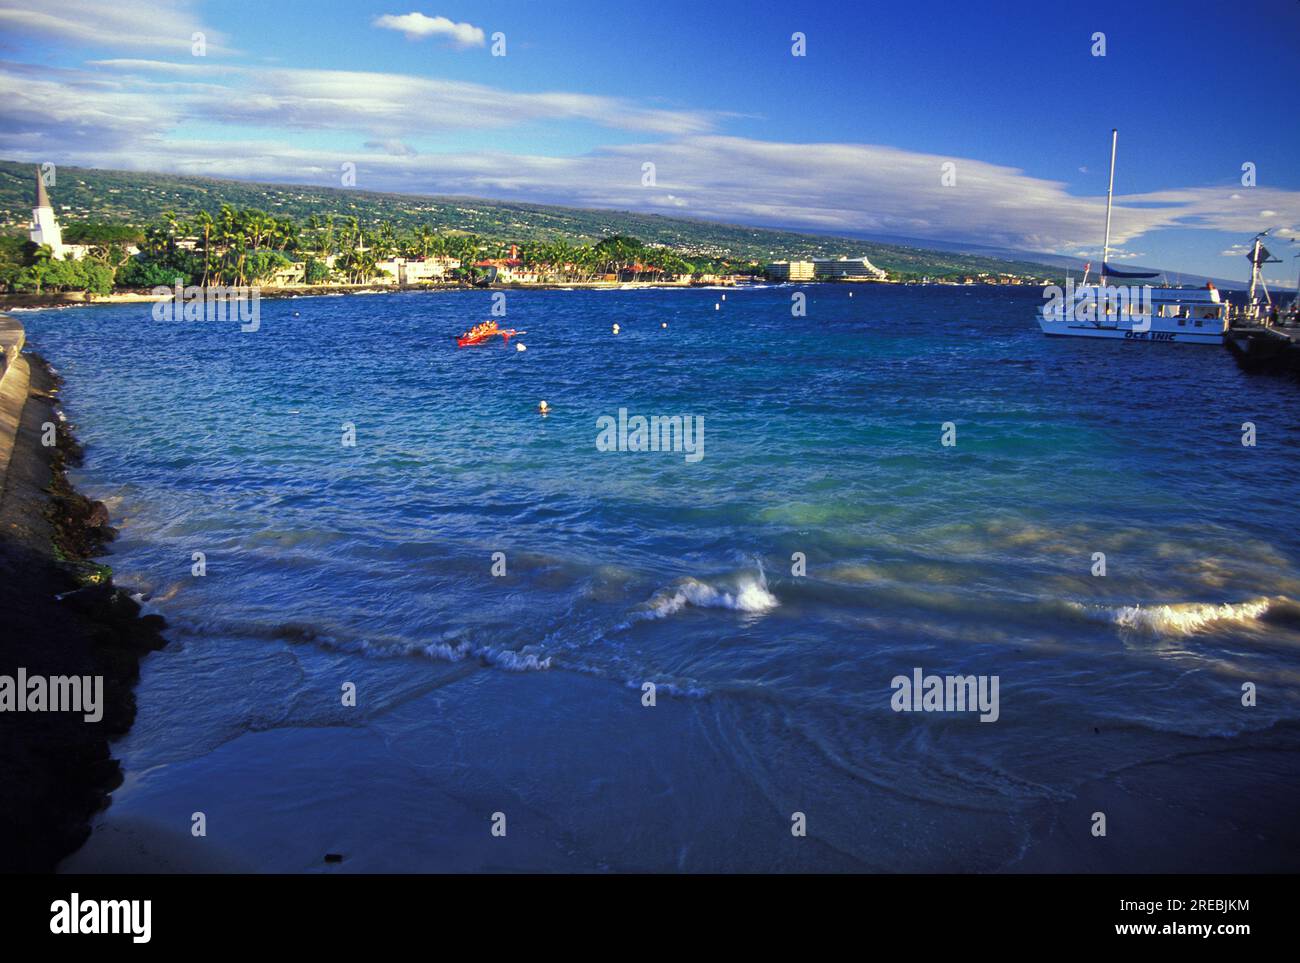 Beach area next to pier in Kailua Kona town Stock Photo